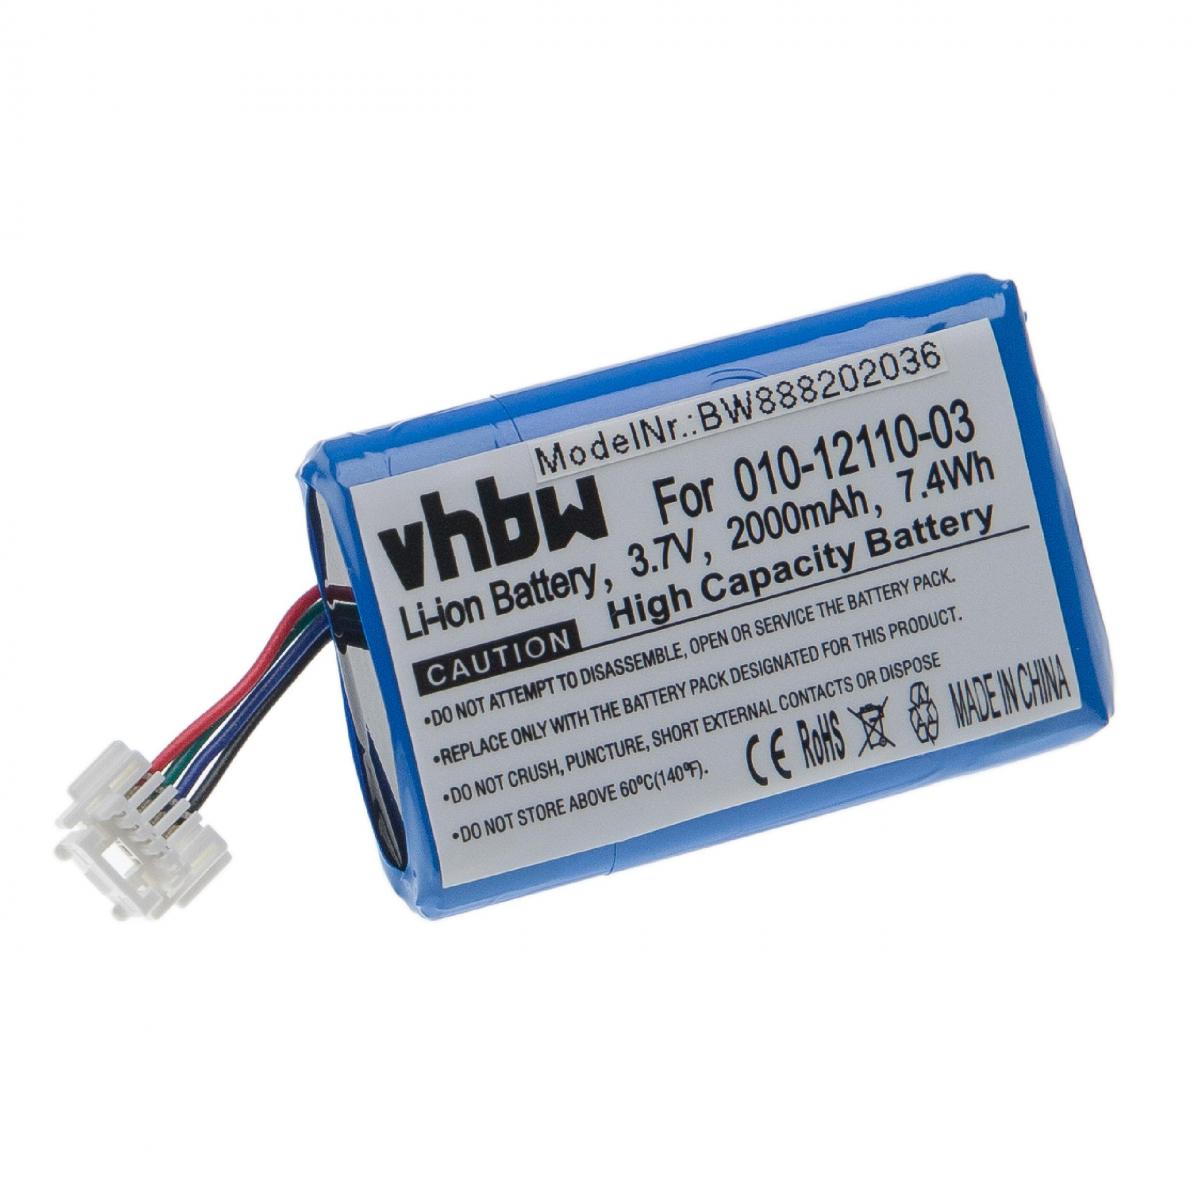 Vhbw - vhbw batterie remplacement pour Garmin 010-12110-03 pour système de navigation GPS (2000mAh, 3,7V, Li-Ion) - Autre appareil de mesure